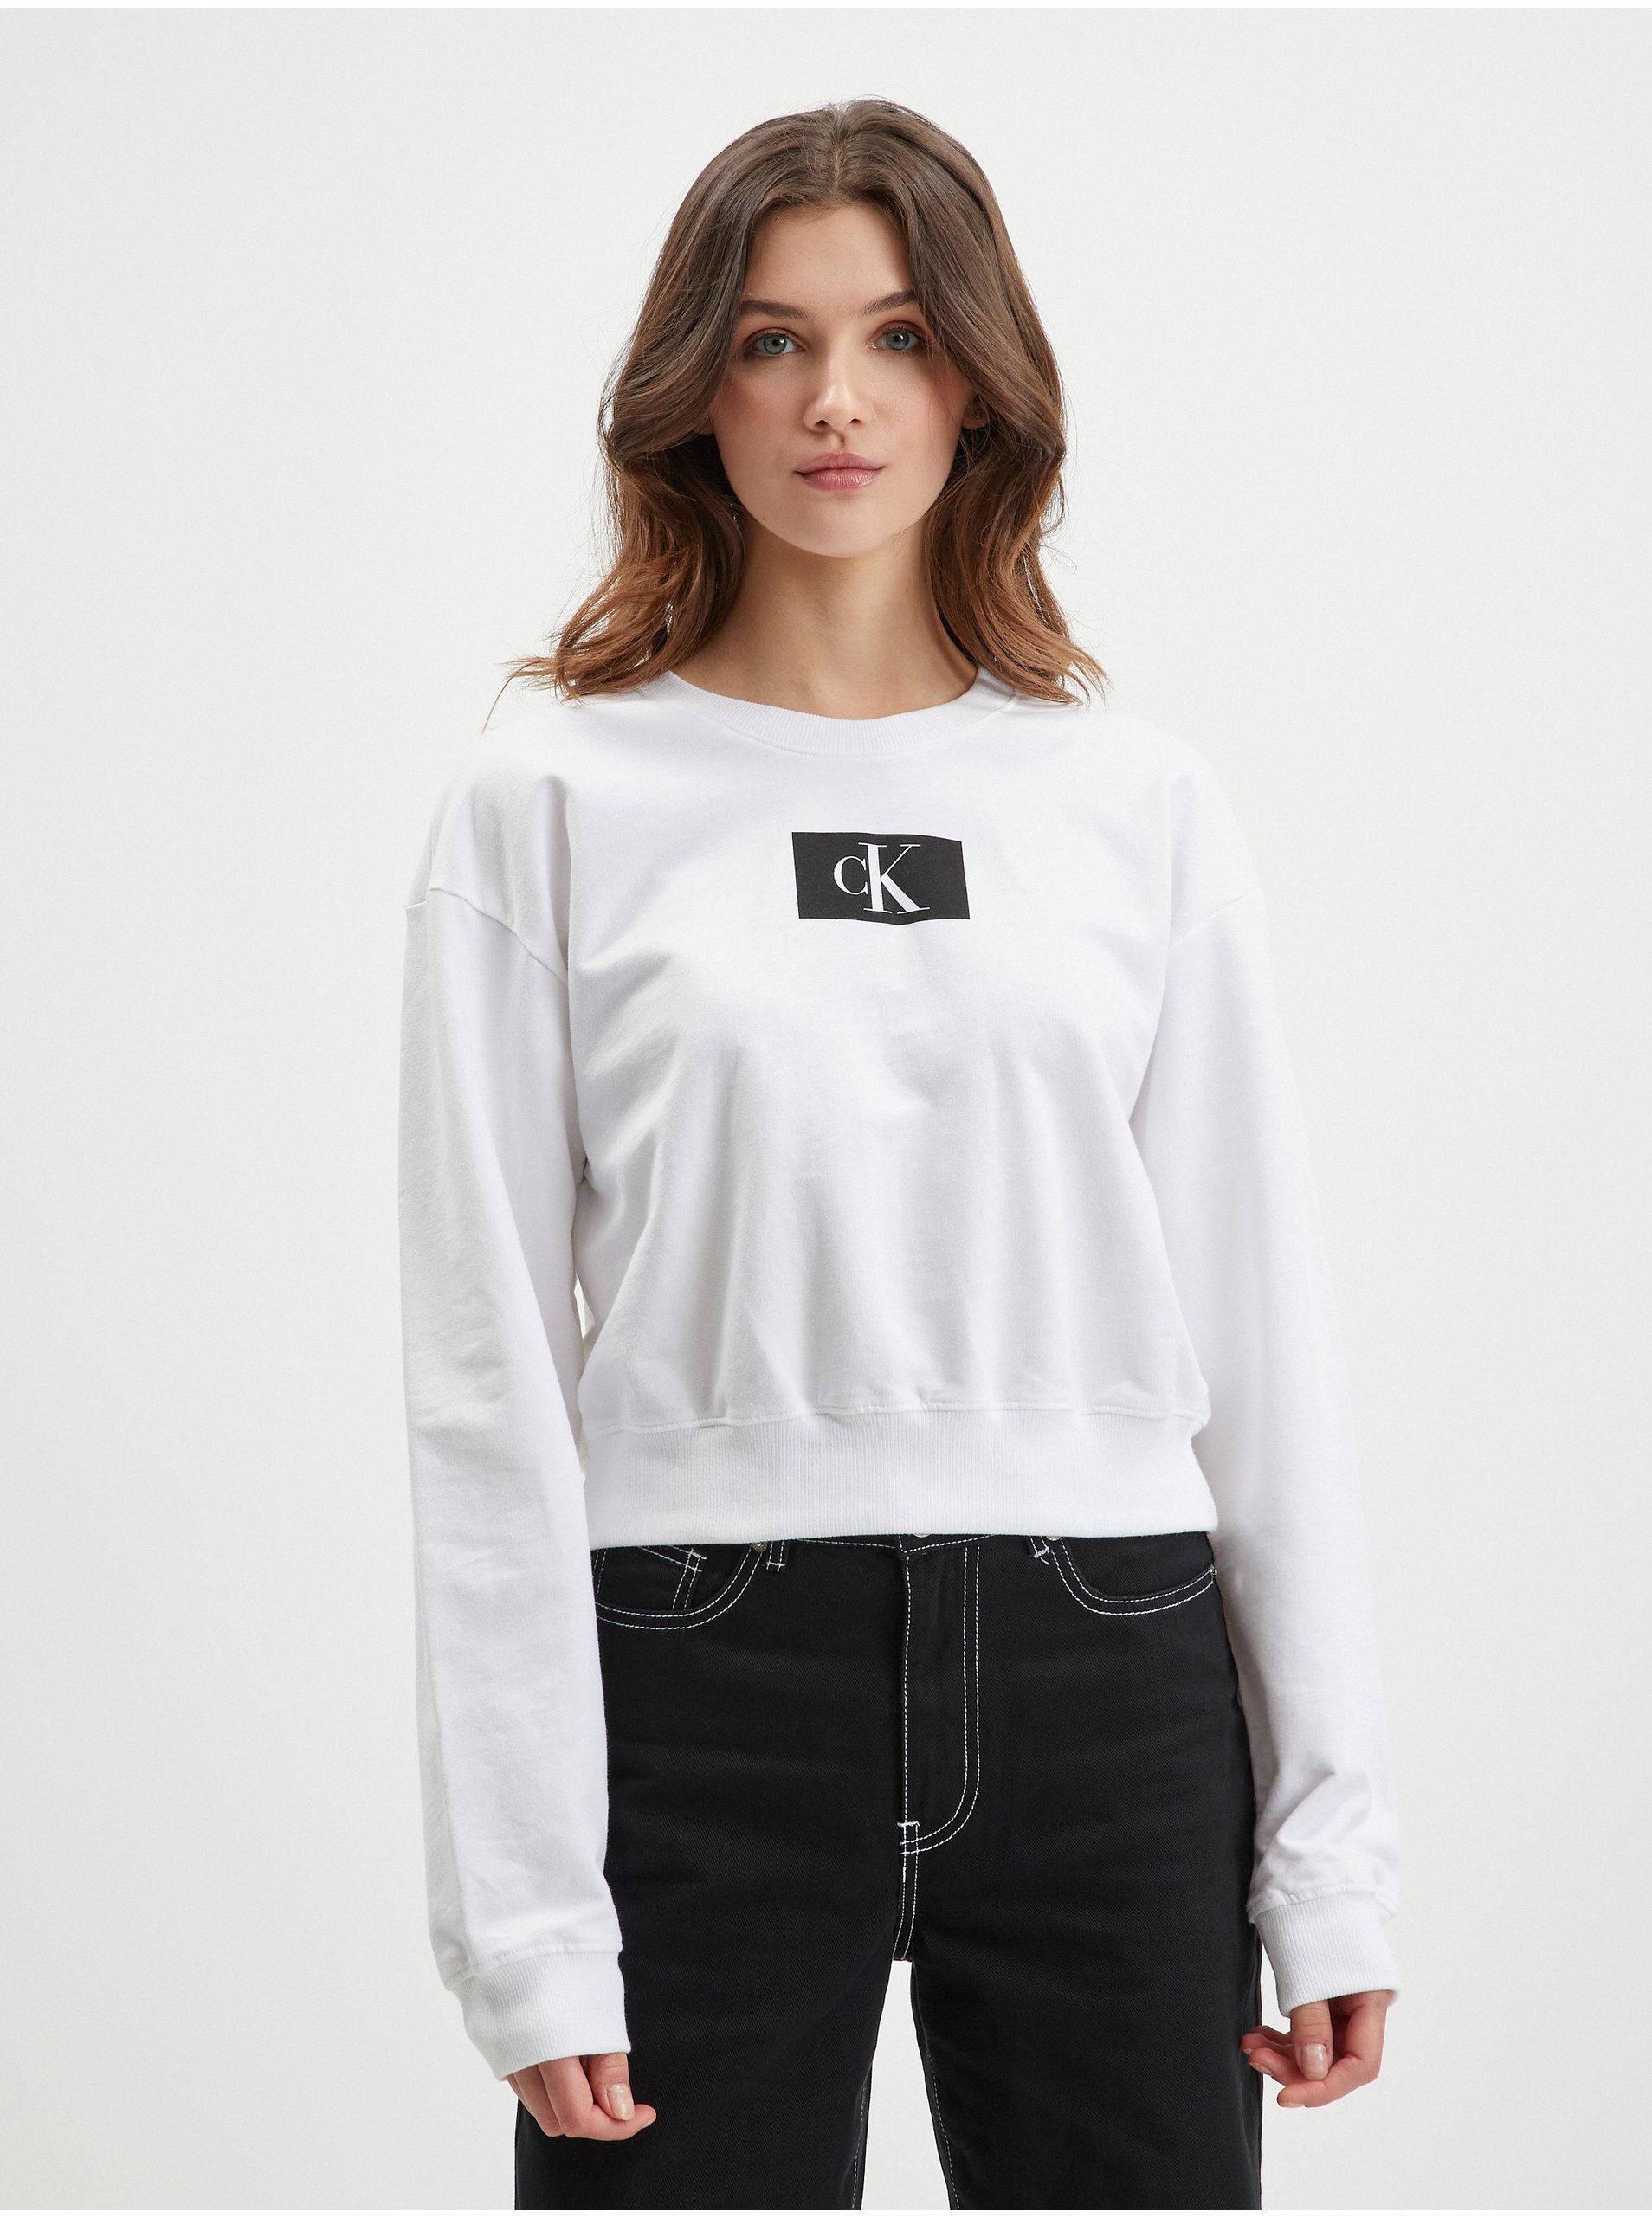 White Women's Calvin Klein Underwear Sweatshirt - Women